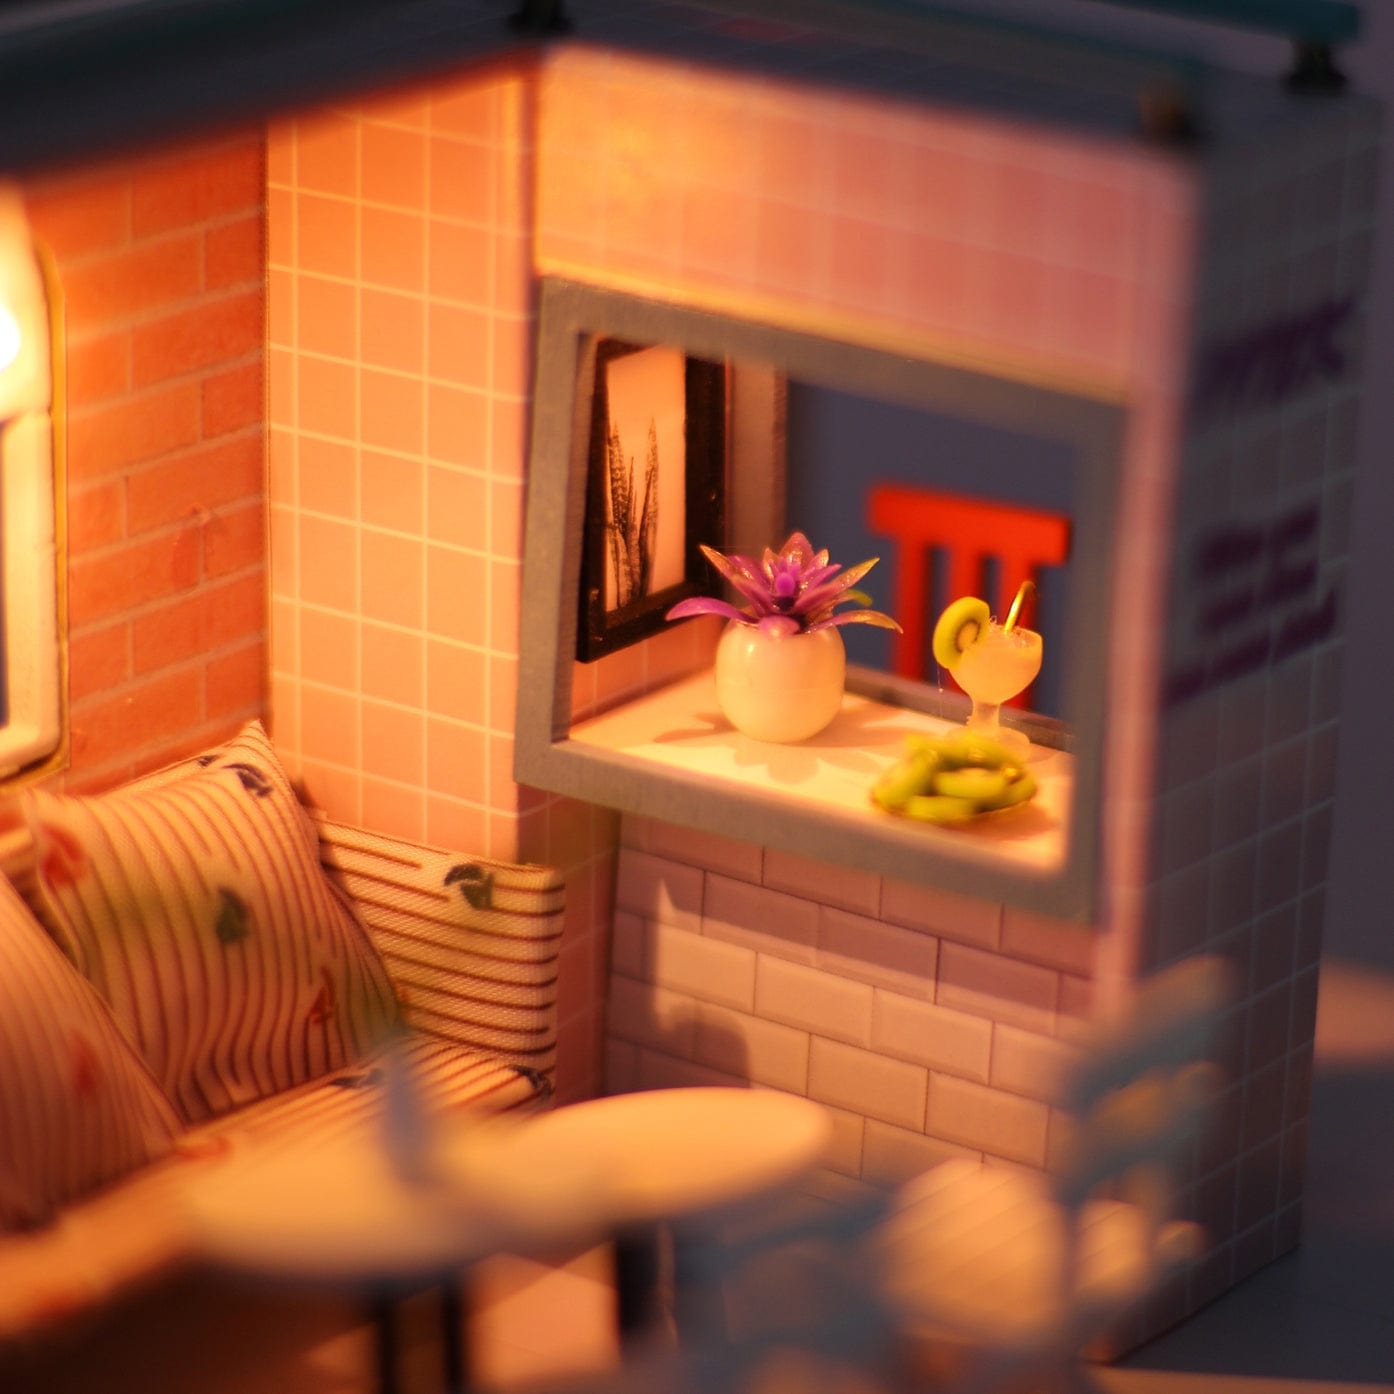 Hands Craft DIY Miniature House Kit: Pink Café Kawaii Gifts